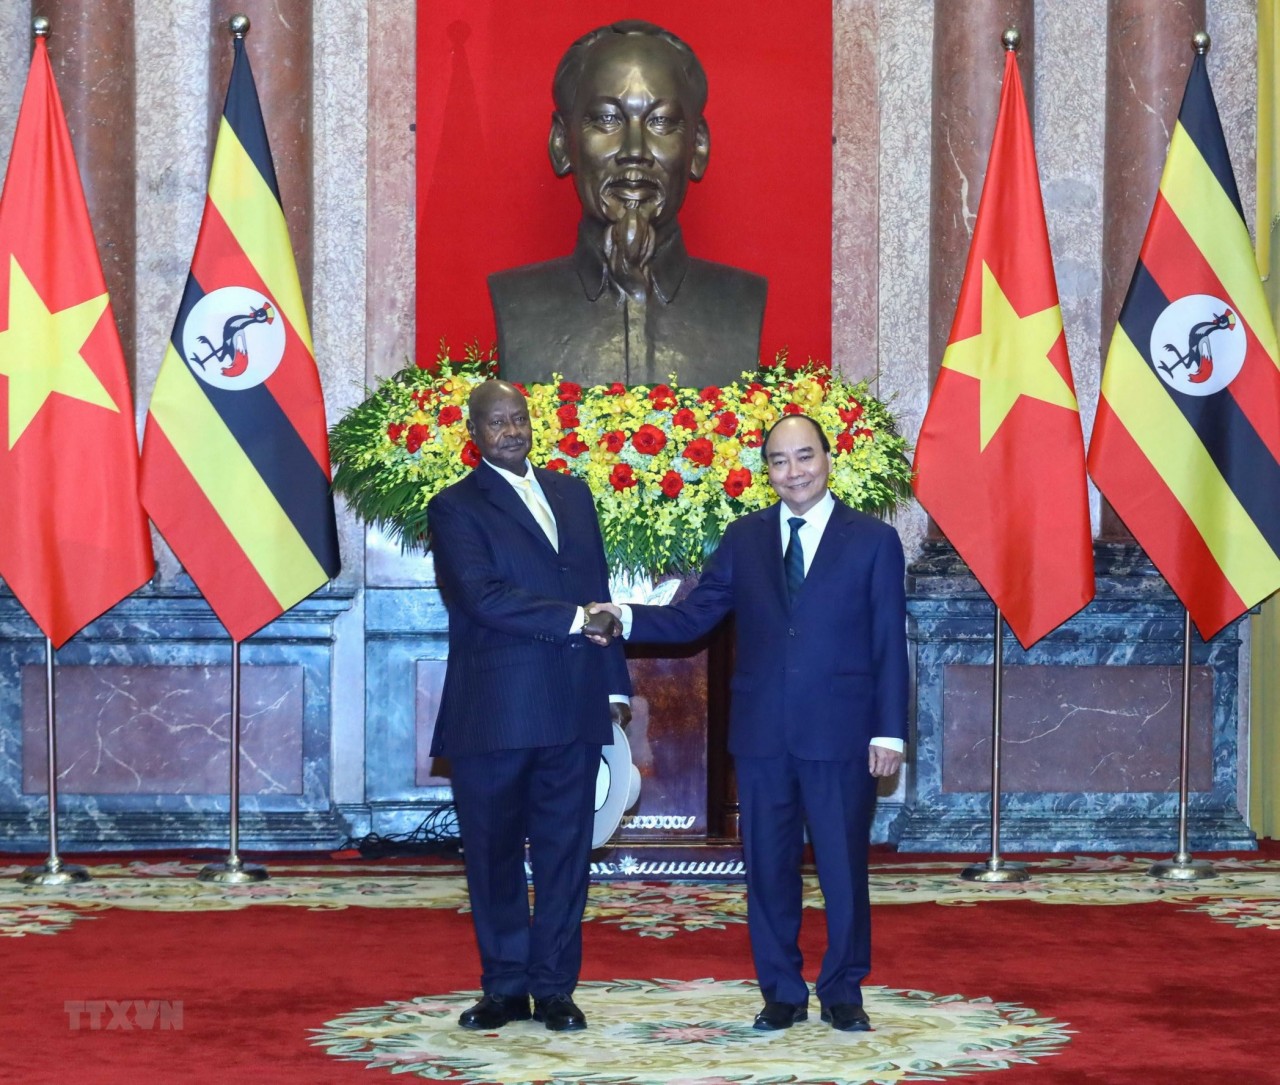 Thúc đẩy quan hệ song phương giữa hai nước Việt Nam và Uganda | Chính trị | Vietnam+ (VietnamPlus)